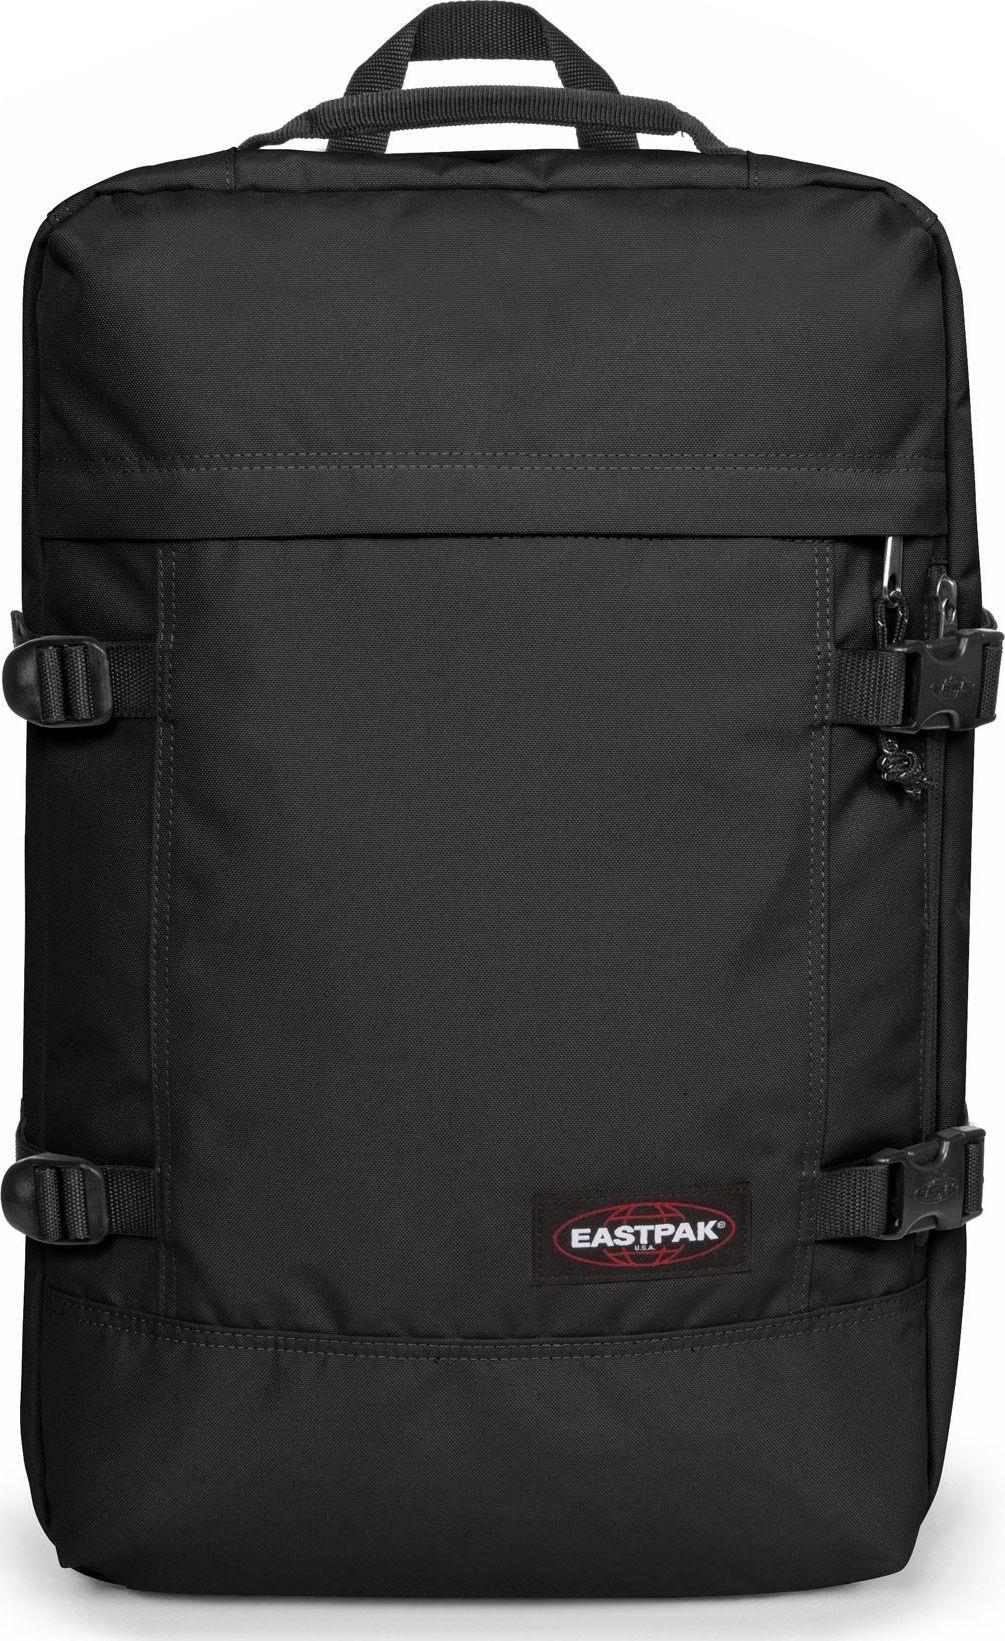 Eastpak Travelpack Black